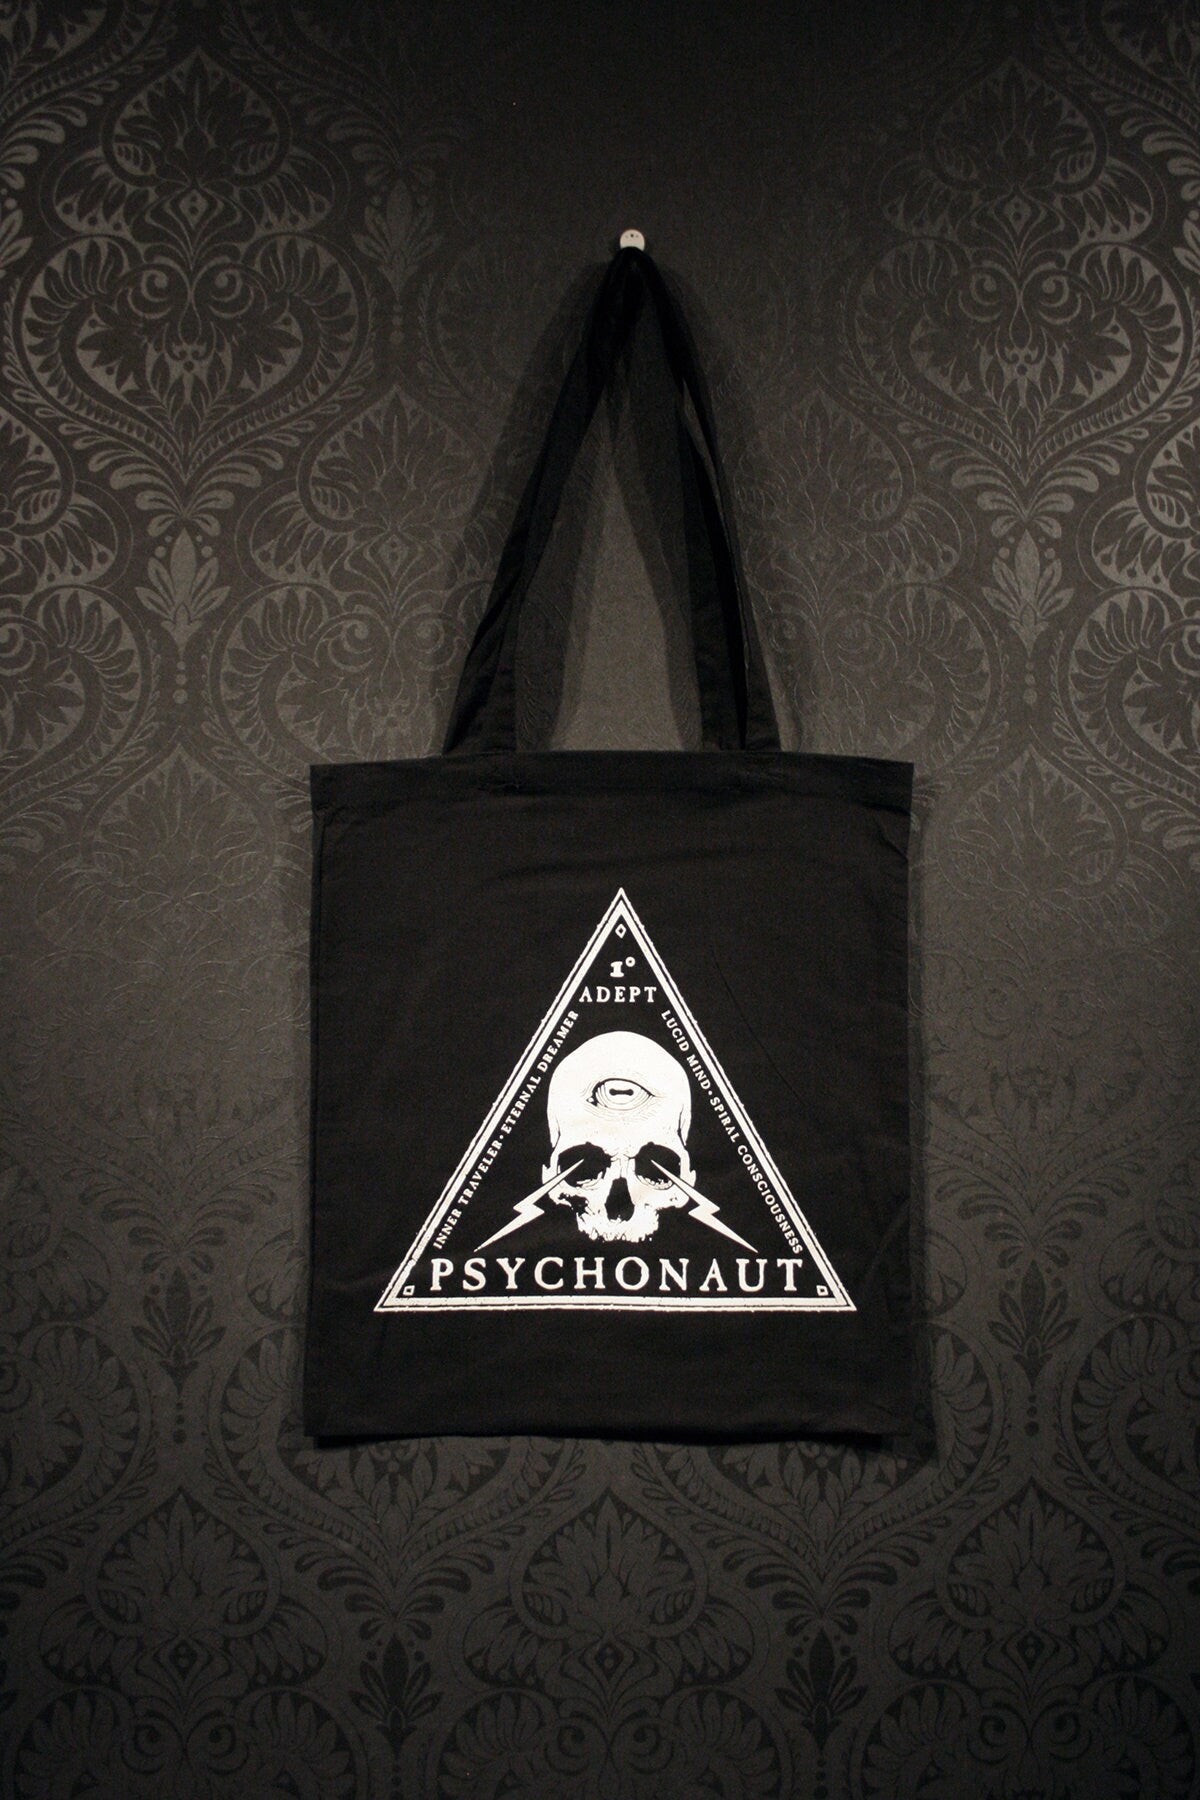 Psychonaut - Tote bag